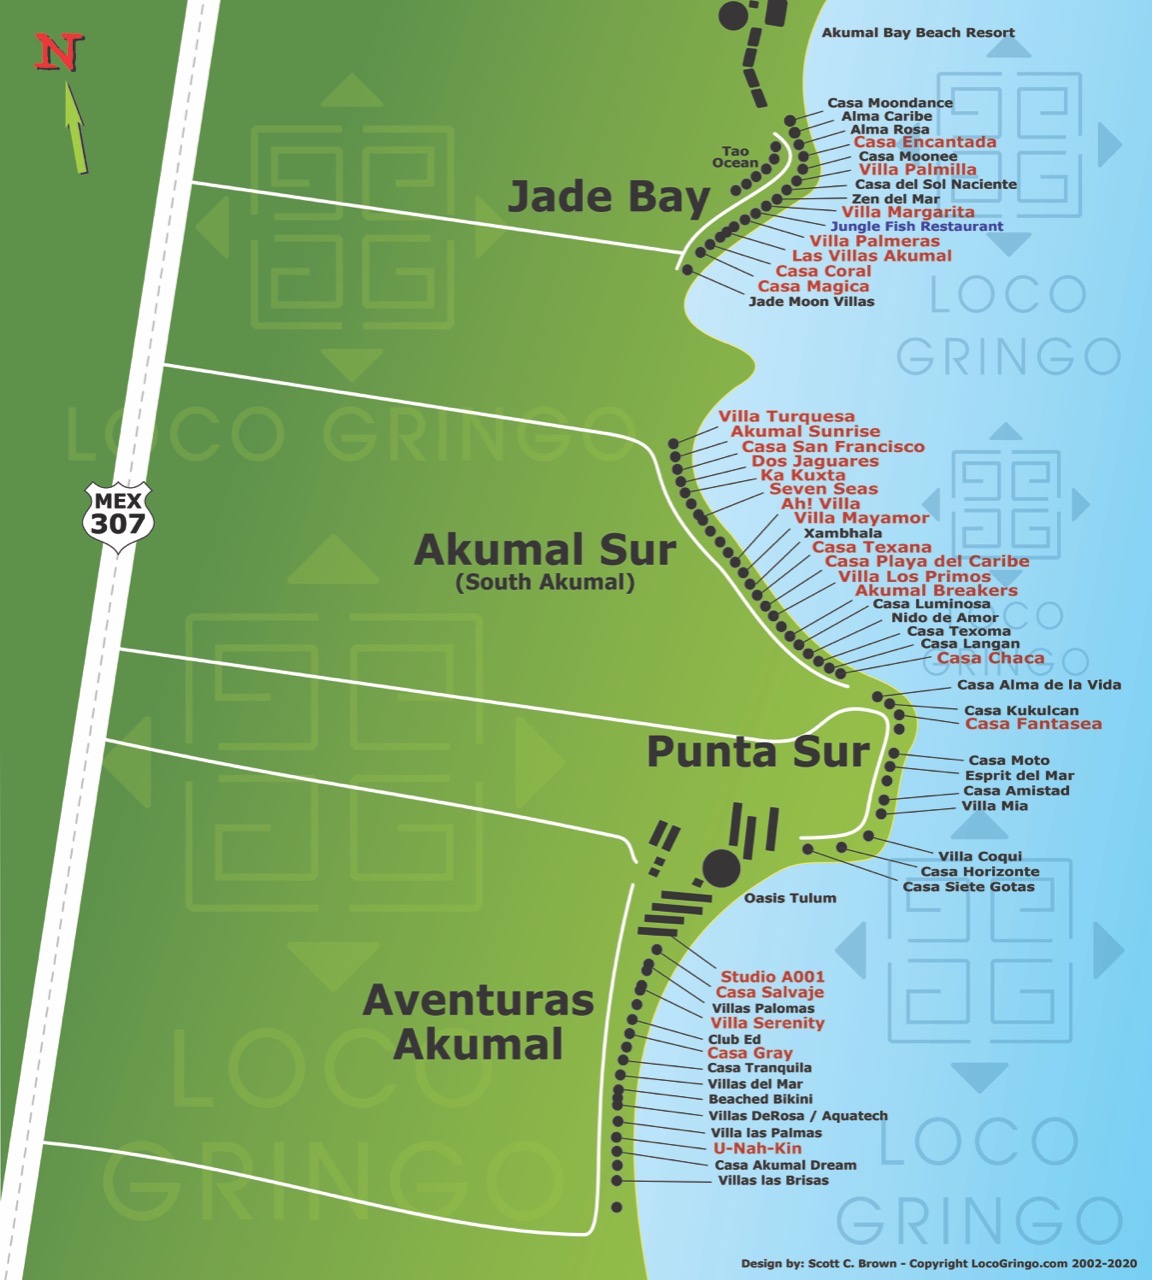 Jade Beach, South Akumal, Aventuras Akumal Map